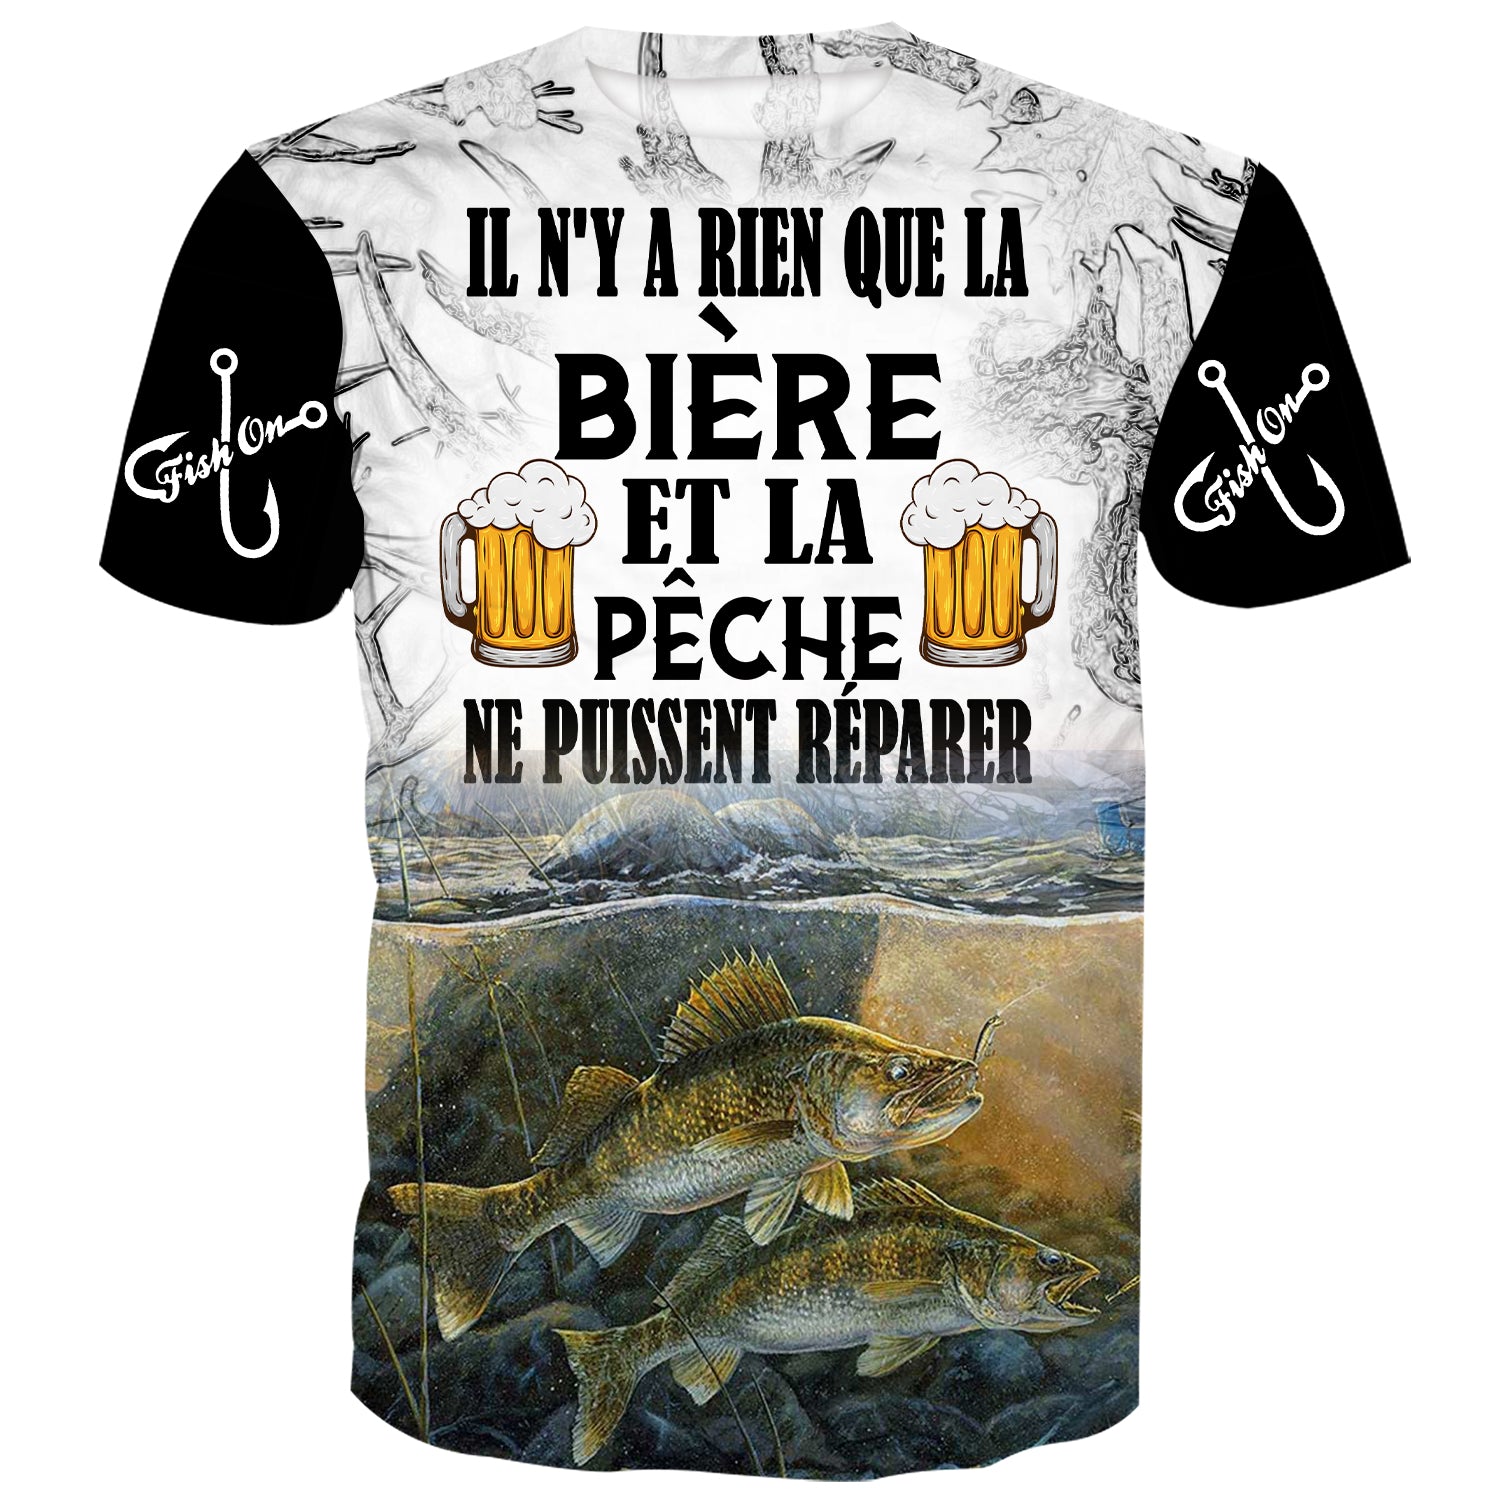 Il n'y a rien que la bière et la pêche ne peuvent réparer - T-shirt doré